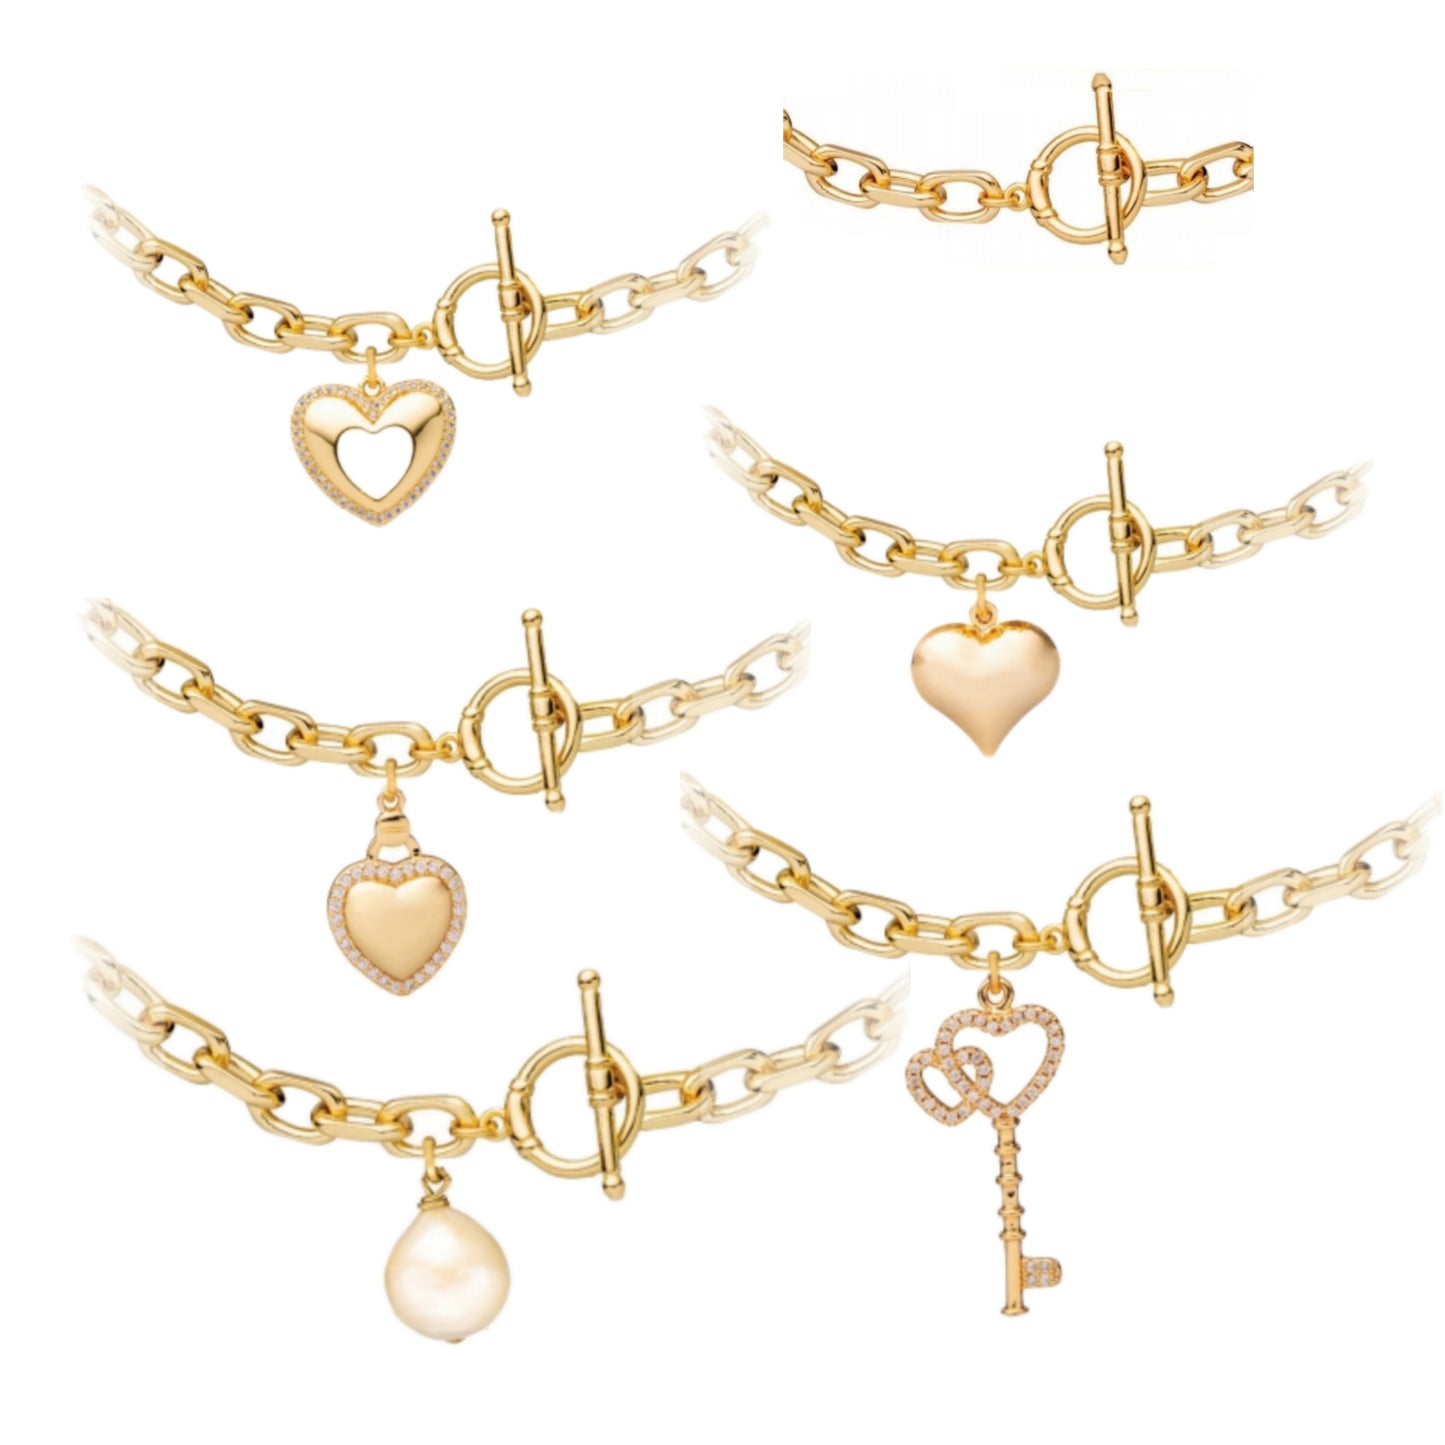 Gold Plated Oval Large Link  Bracelet - HK Jewels